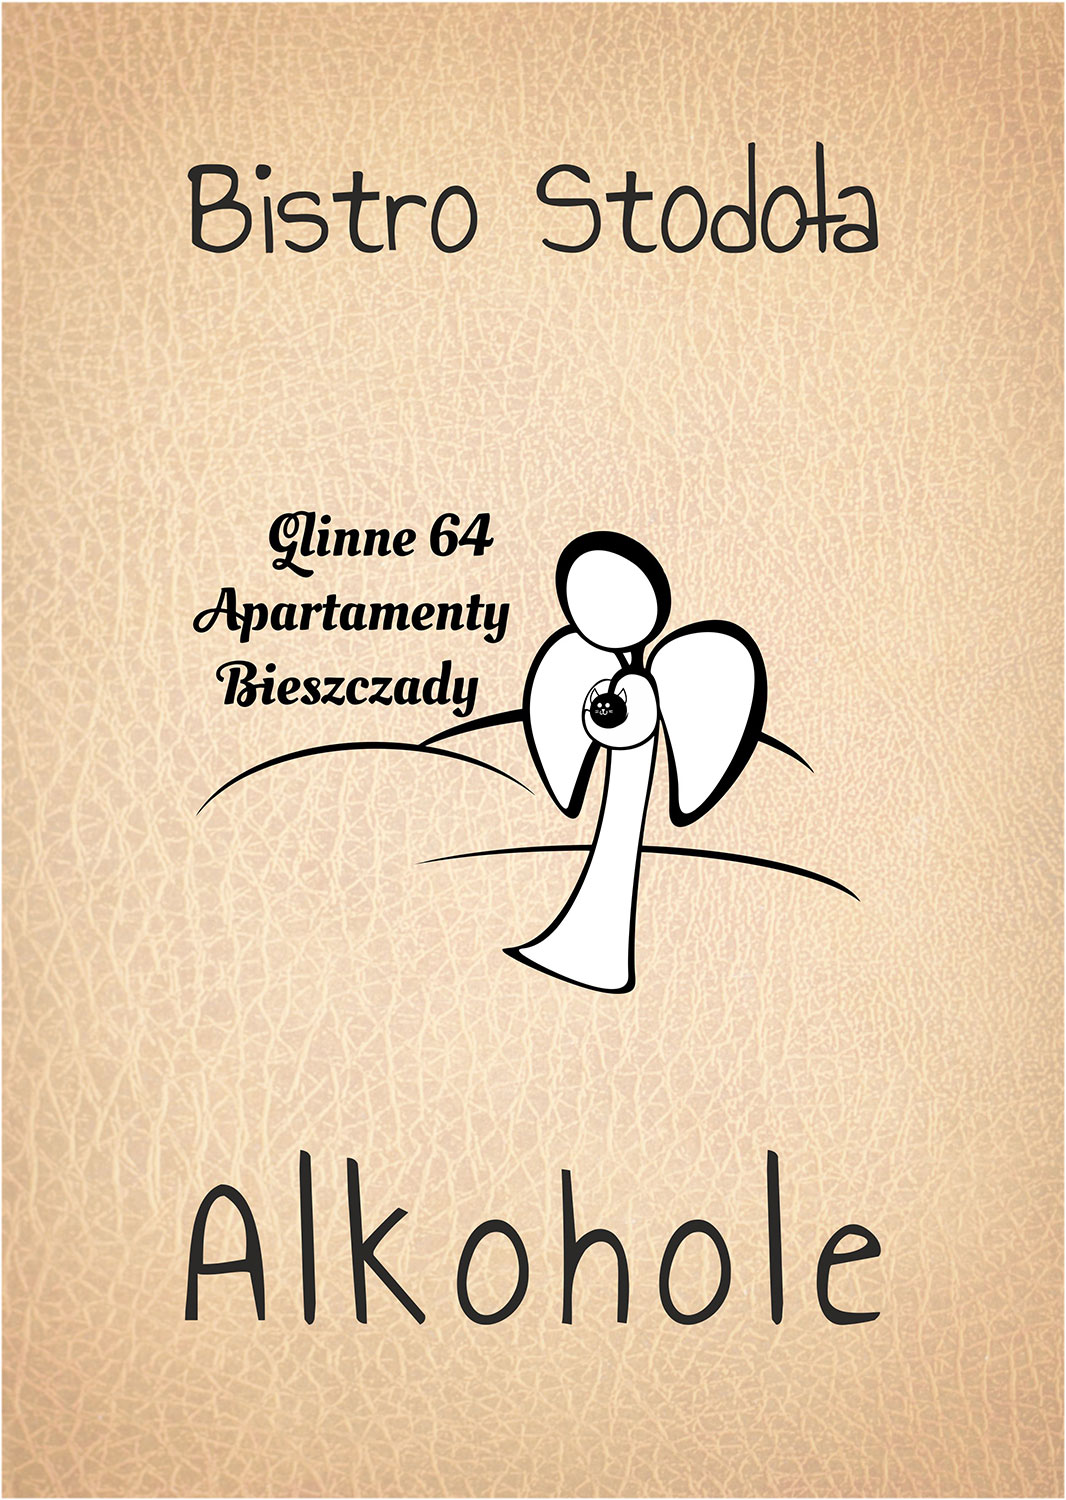 Bistro Stodoła - drinki - Apartamenty Bieszczady Glinne 64